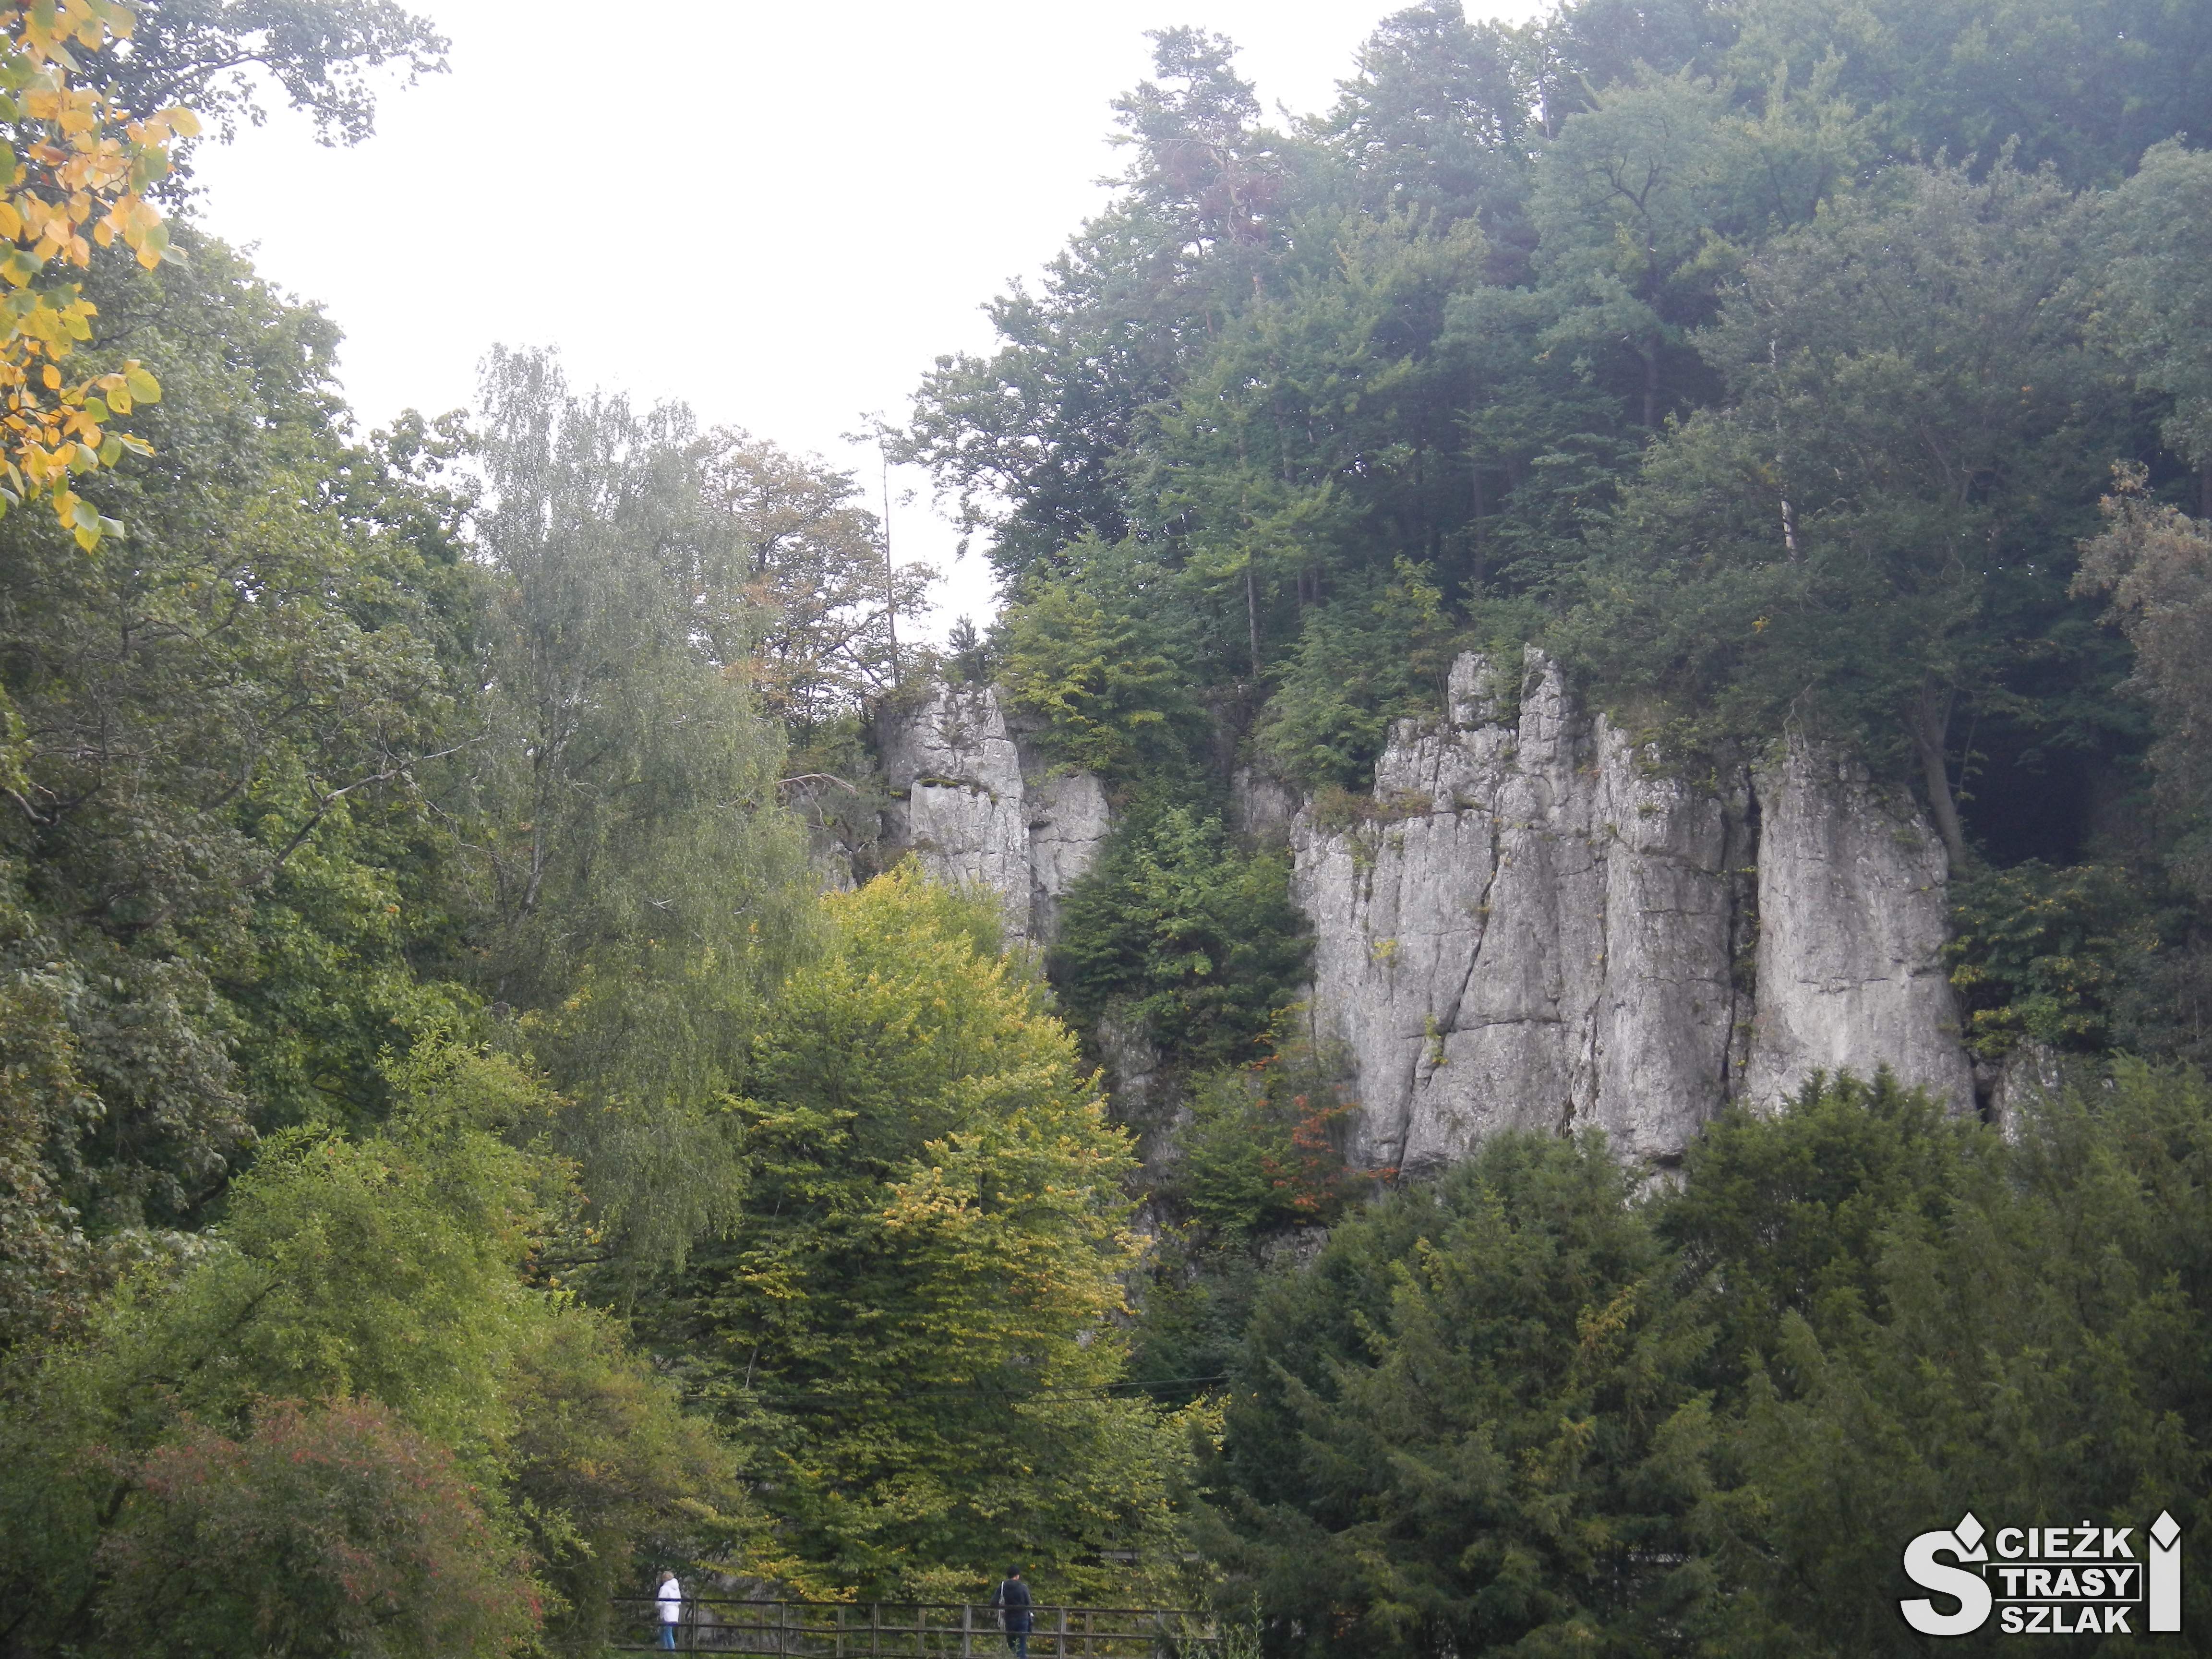 Wysokie skały wapienne wśród drzew na trasie turystycznej z zamku w Ojcowie do pieskowej skały